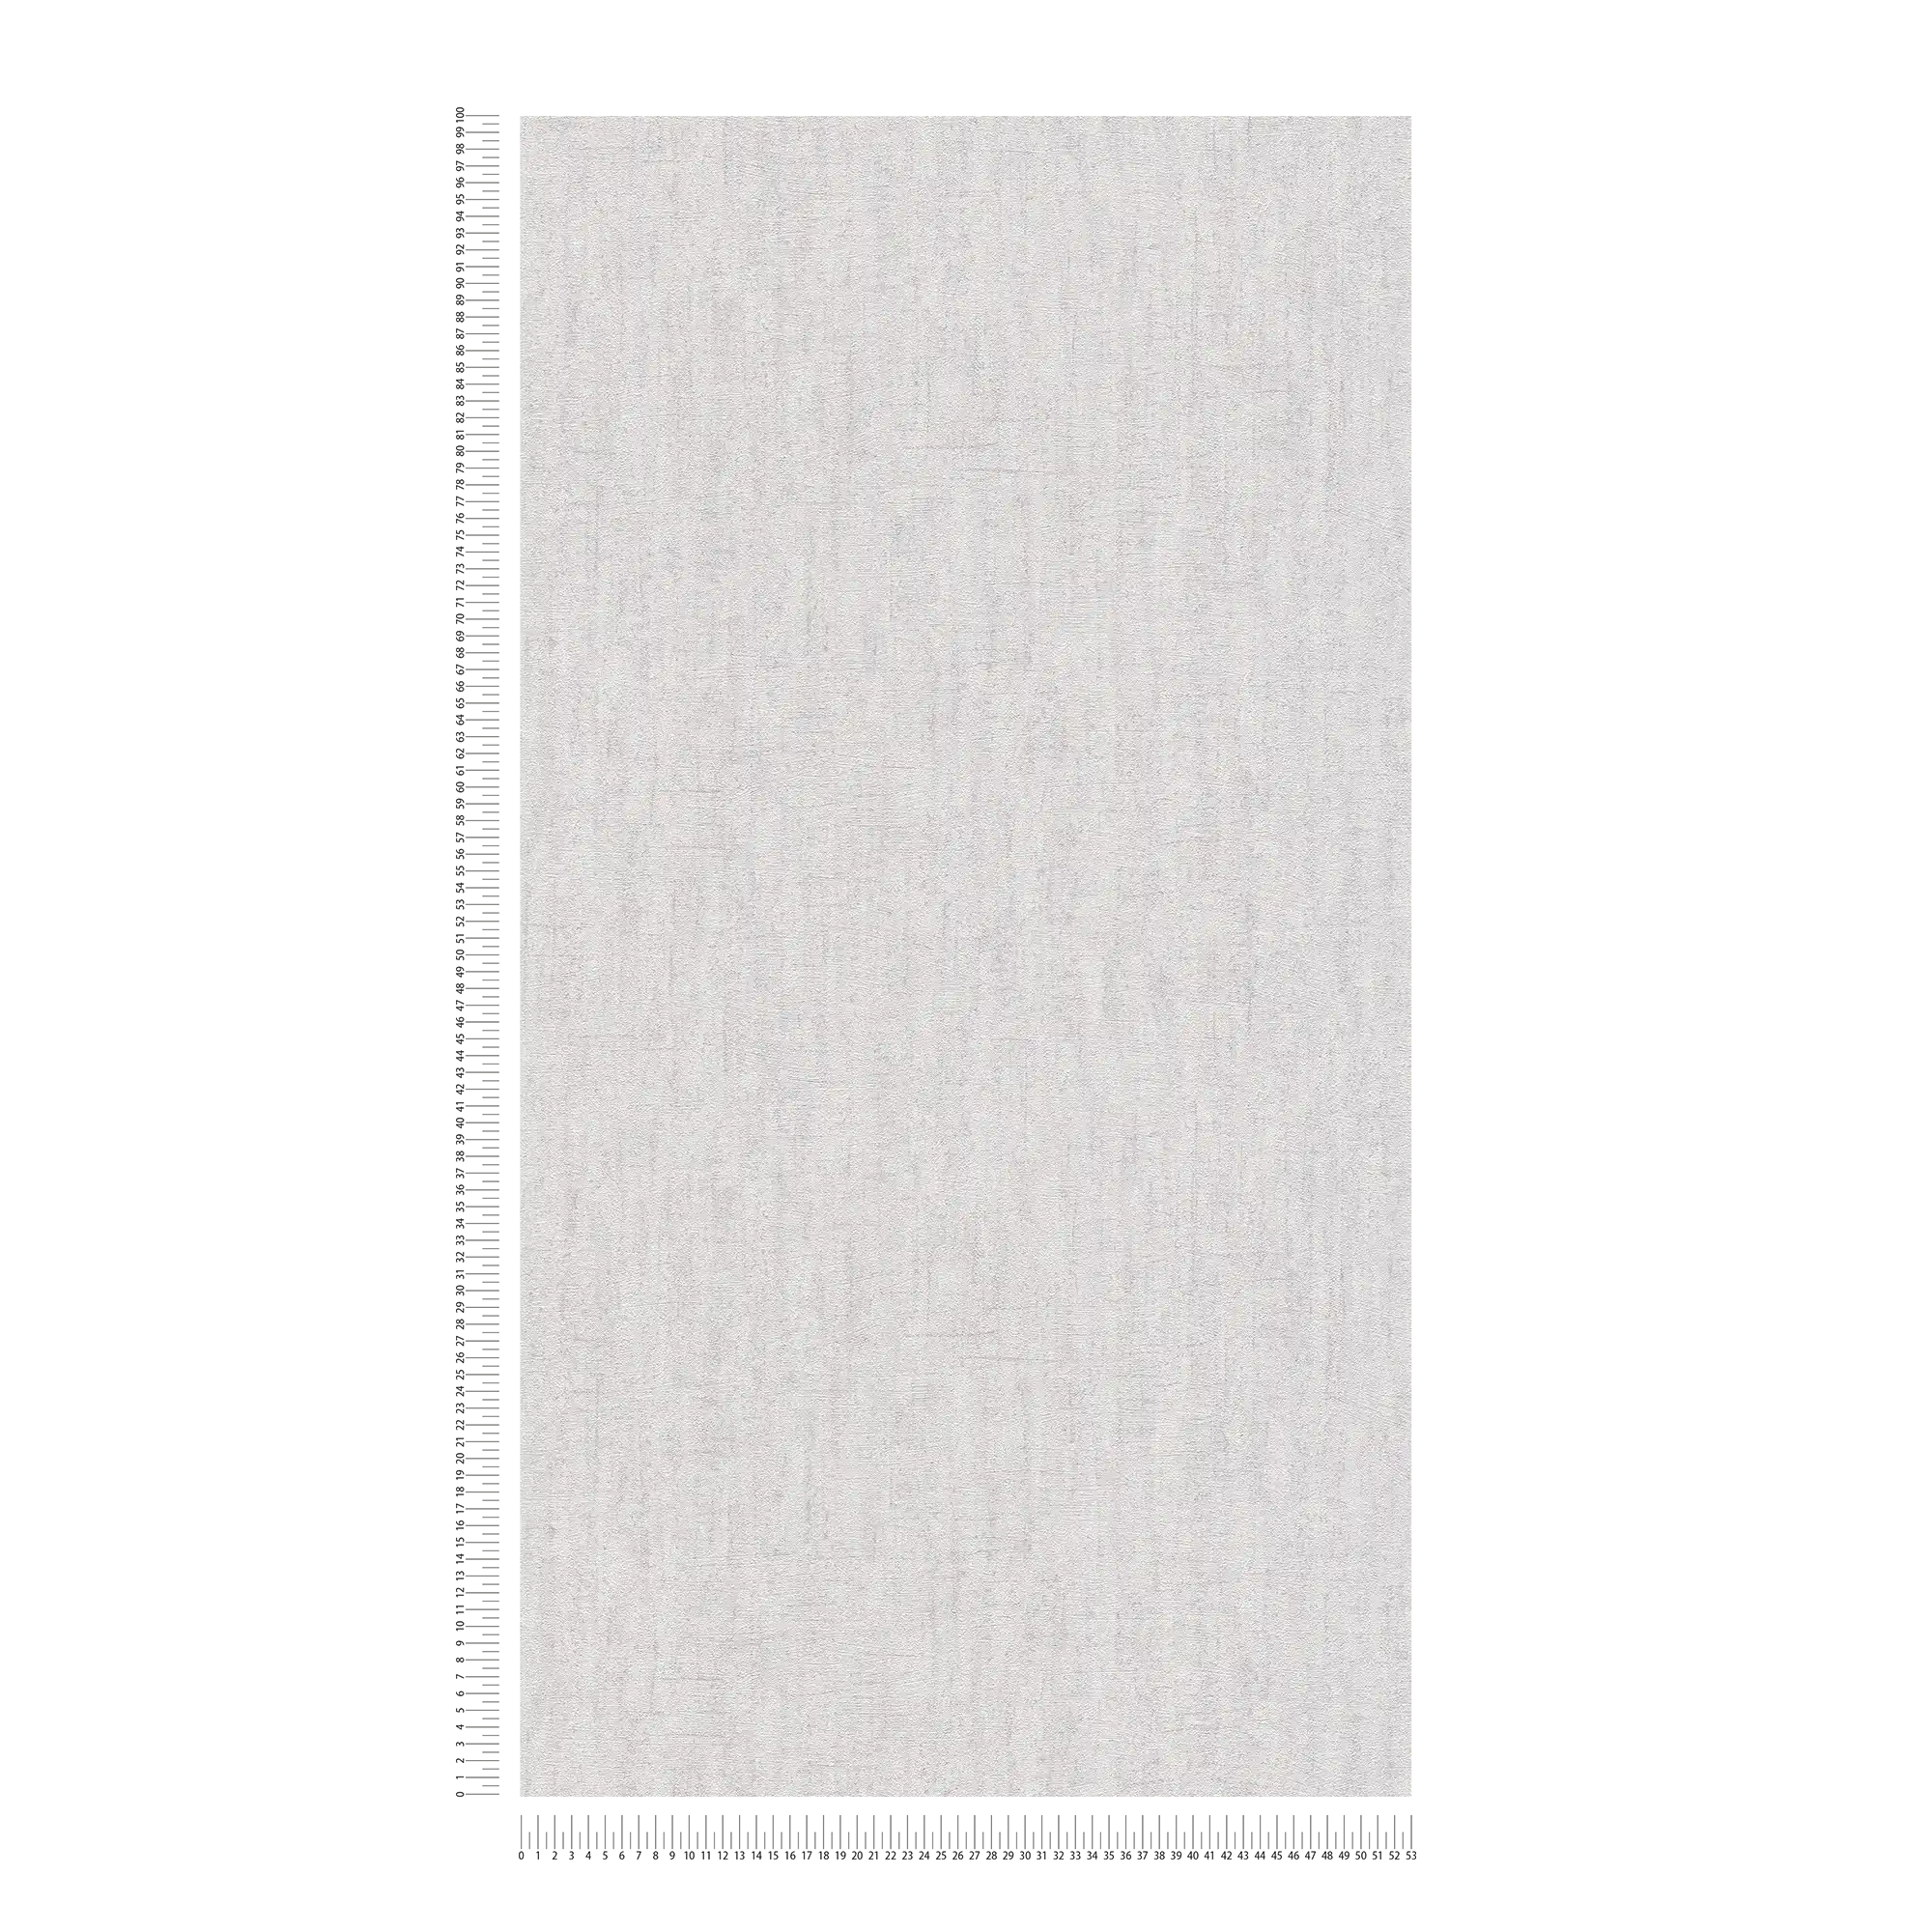             Papier peint intissé gris clair brillant avec motifs structurés - gris
        